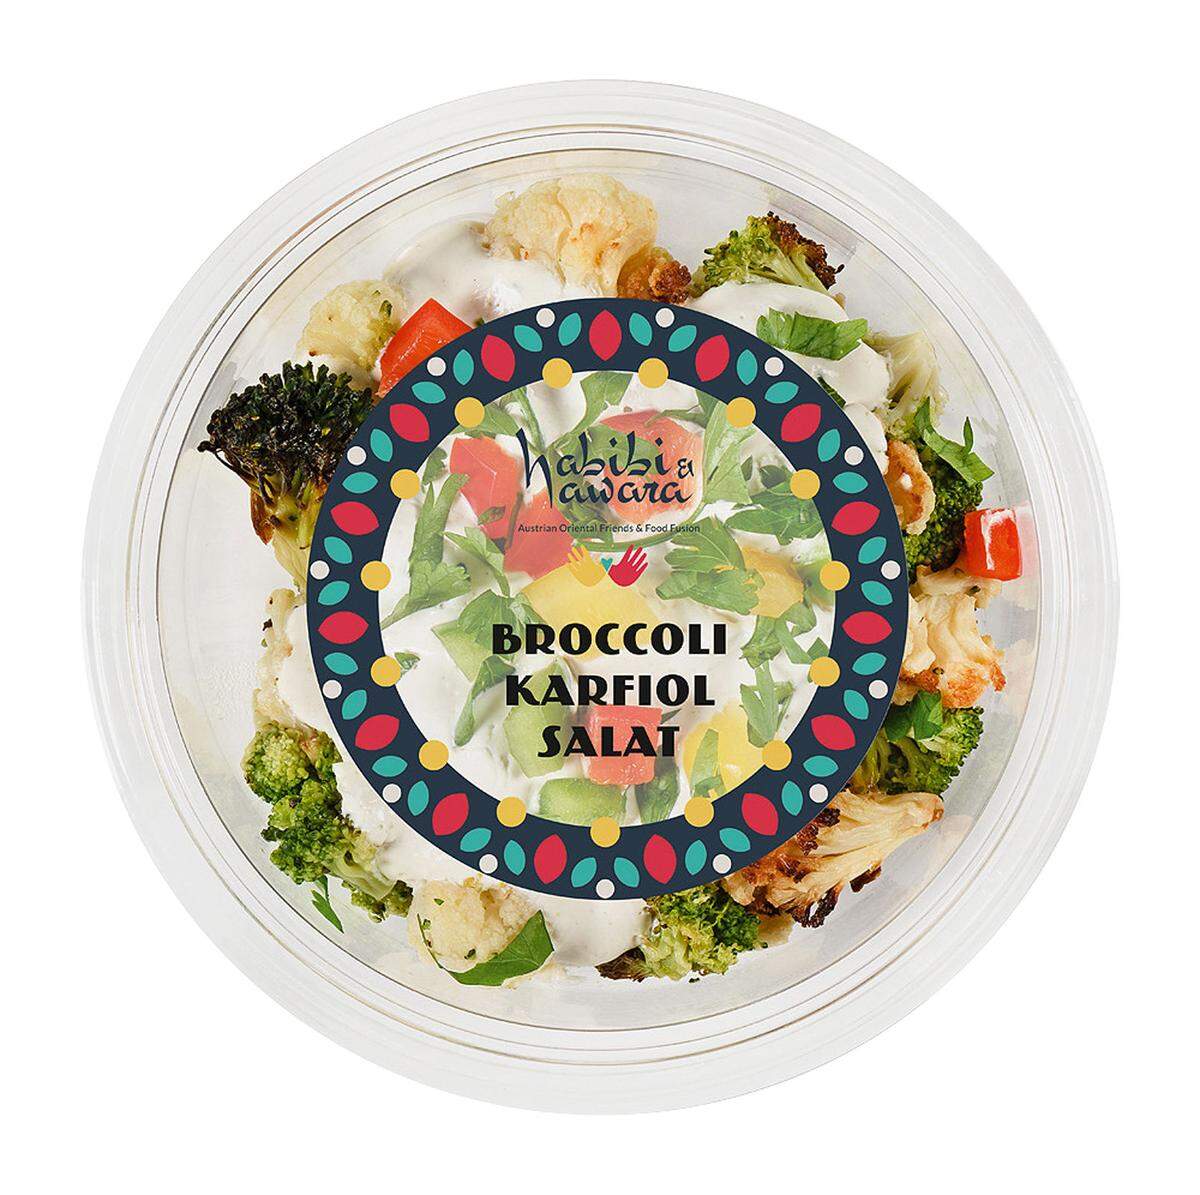 Es ist, was man ein Vorzeigeprojekt nennt: Das Lokal Habibi & Hawara im ersten Wiener Bezirk, in dem Menschen mit Fluchterfahrungen kochen und servieren. Nun sind einige der Salate und Hummus-Variationen unter der etablierten Marke auch bei Billa und Merkur zu kaufen; zubereitet allerdings von Wojnar, bekannt für Tankstellensandwiches. Fader Brokkoli-Karfiol-Salat, Süßkartoffelsalat, „Arabischer Salat“ aus sehr grob geschnittenem Paprika, Mangohummus – sagen wir so: Da ist noch Luft nach oben. Habibi & Hawara bei Billa & Merkur.